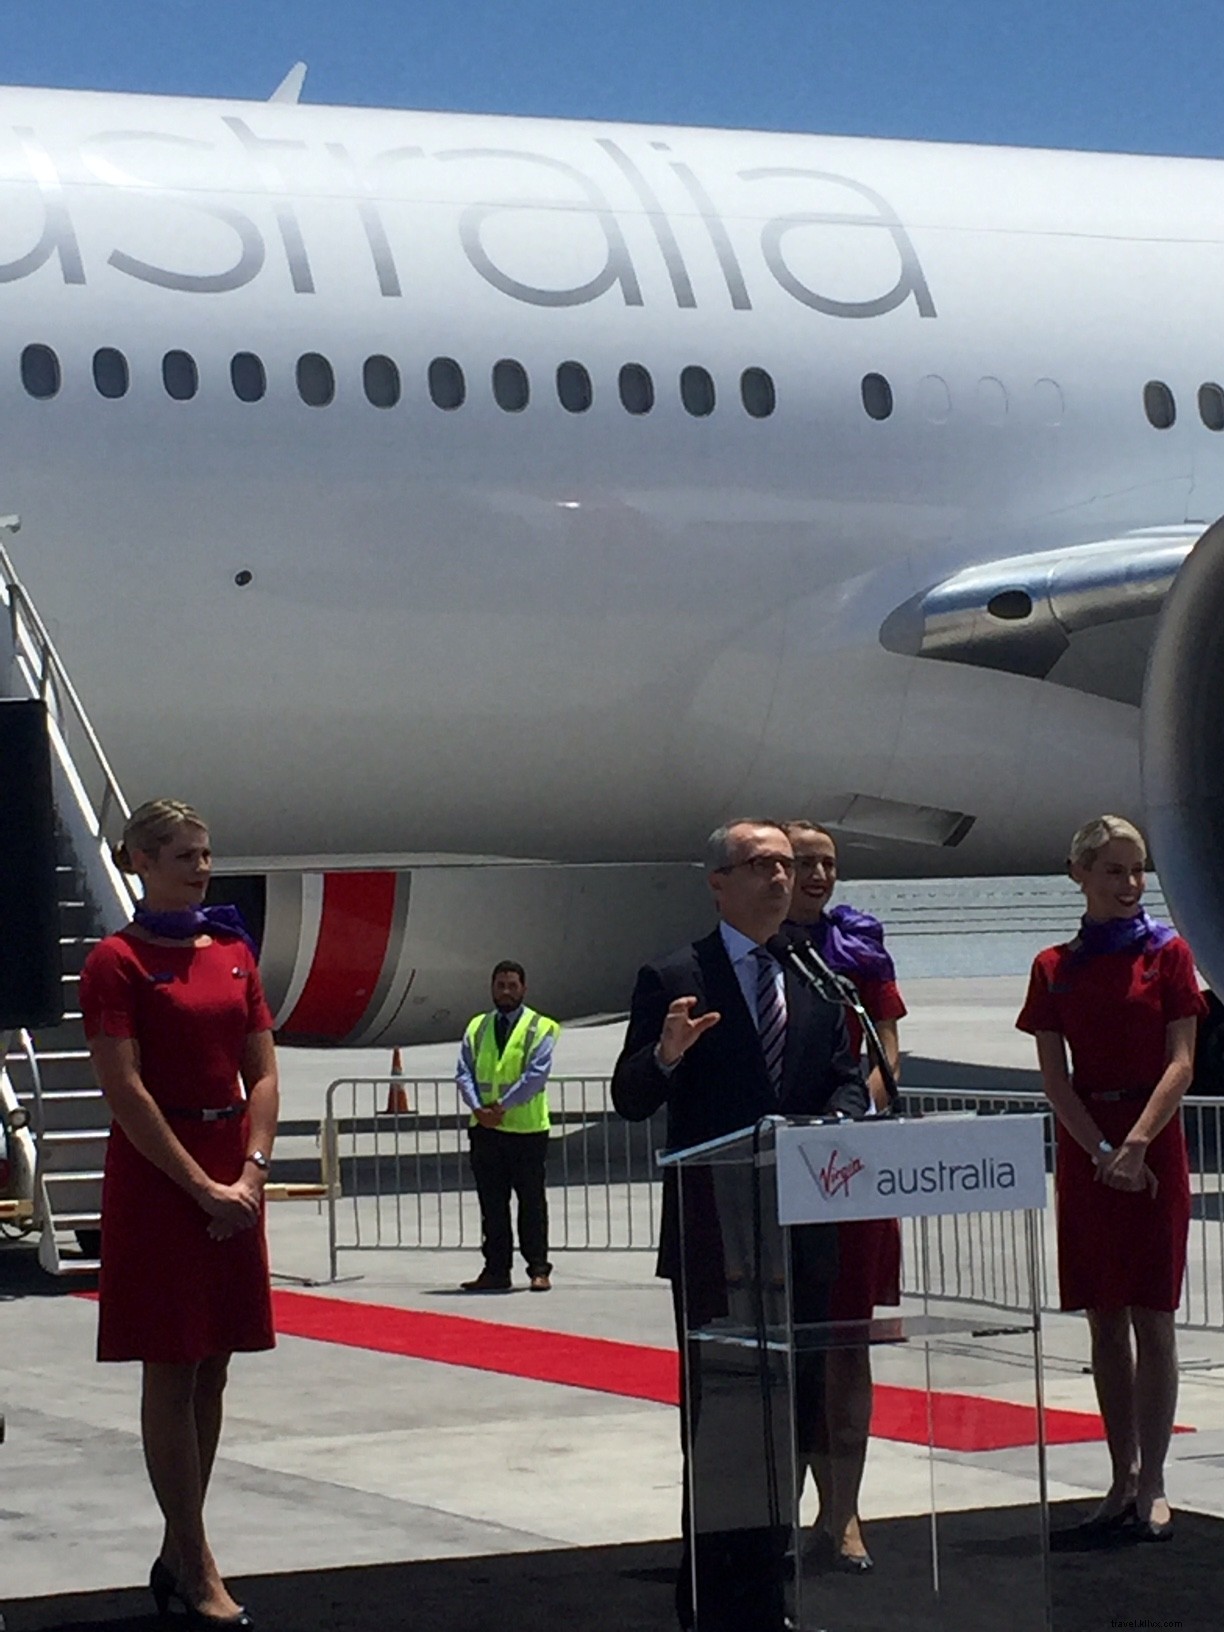 Aperçu exclusif :la classe affaires internationale de Virgin Australia fait ses débuts 